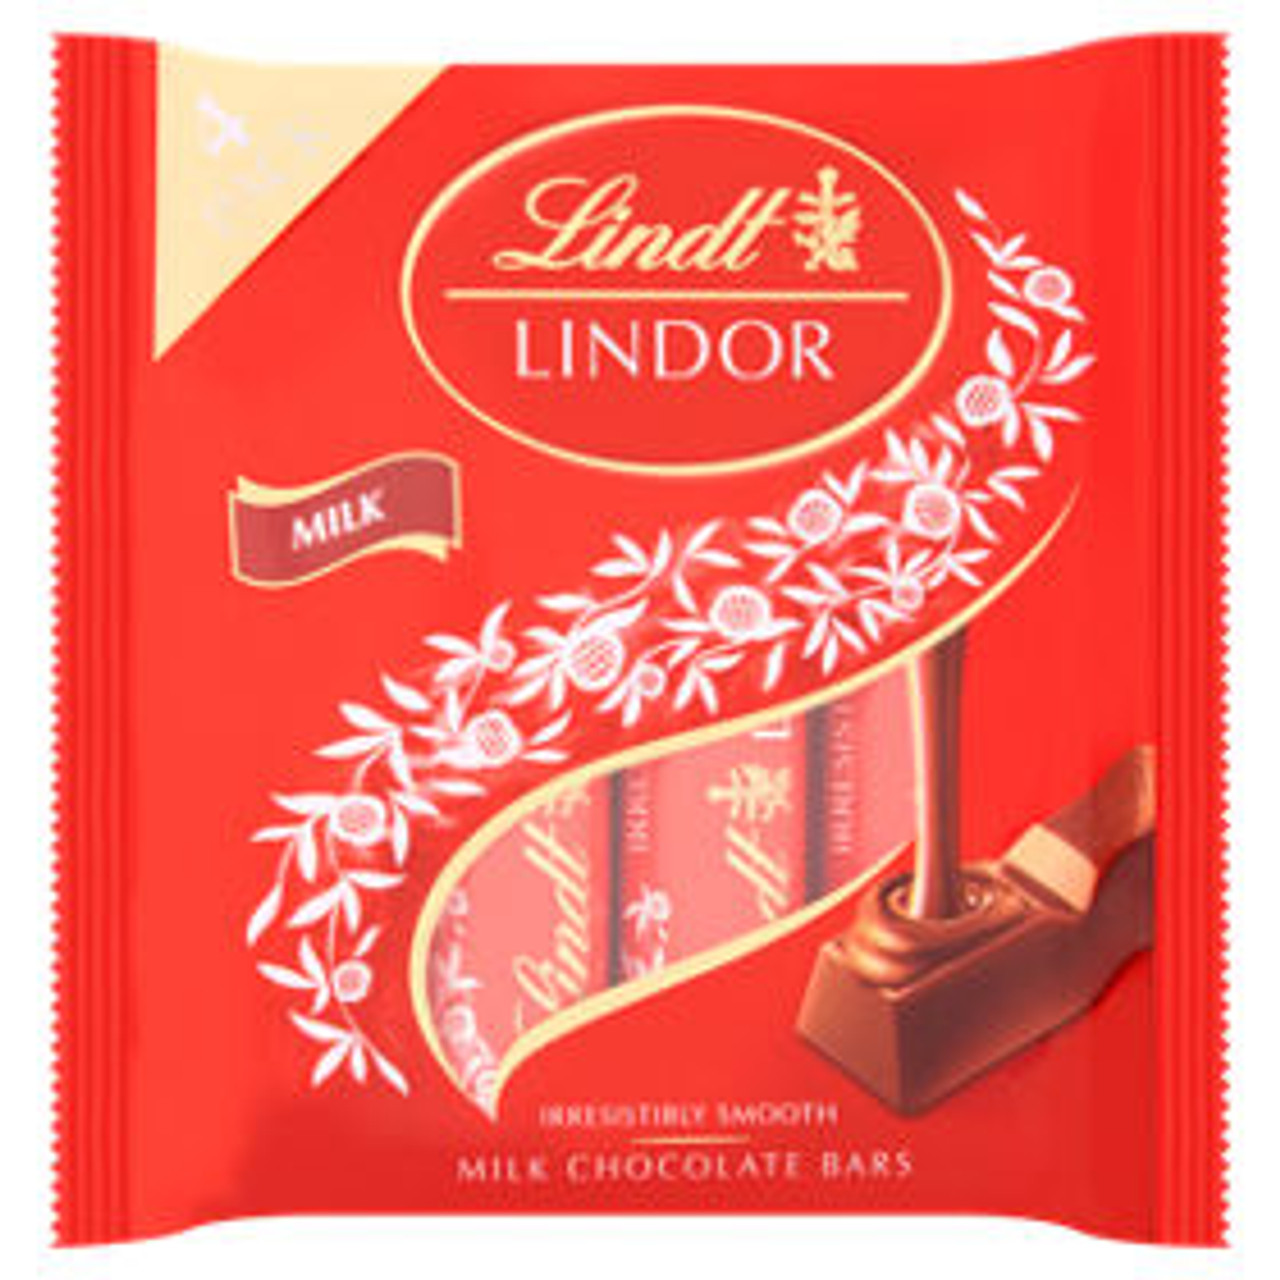 Lindt Lindor Milk Chocolate Bars 4 Pack 100g Caletoni International Grocer 3973